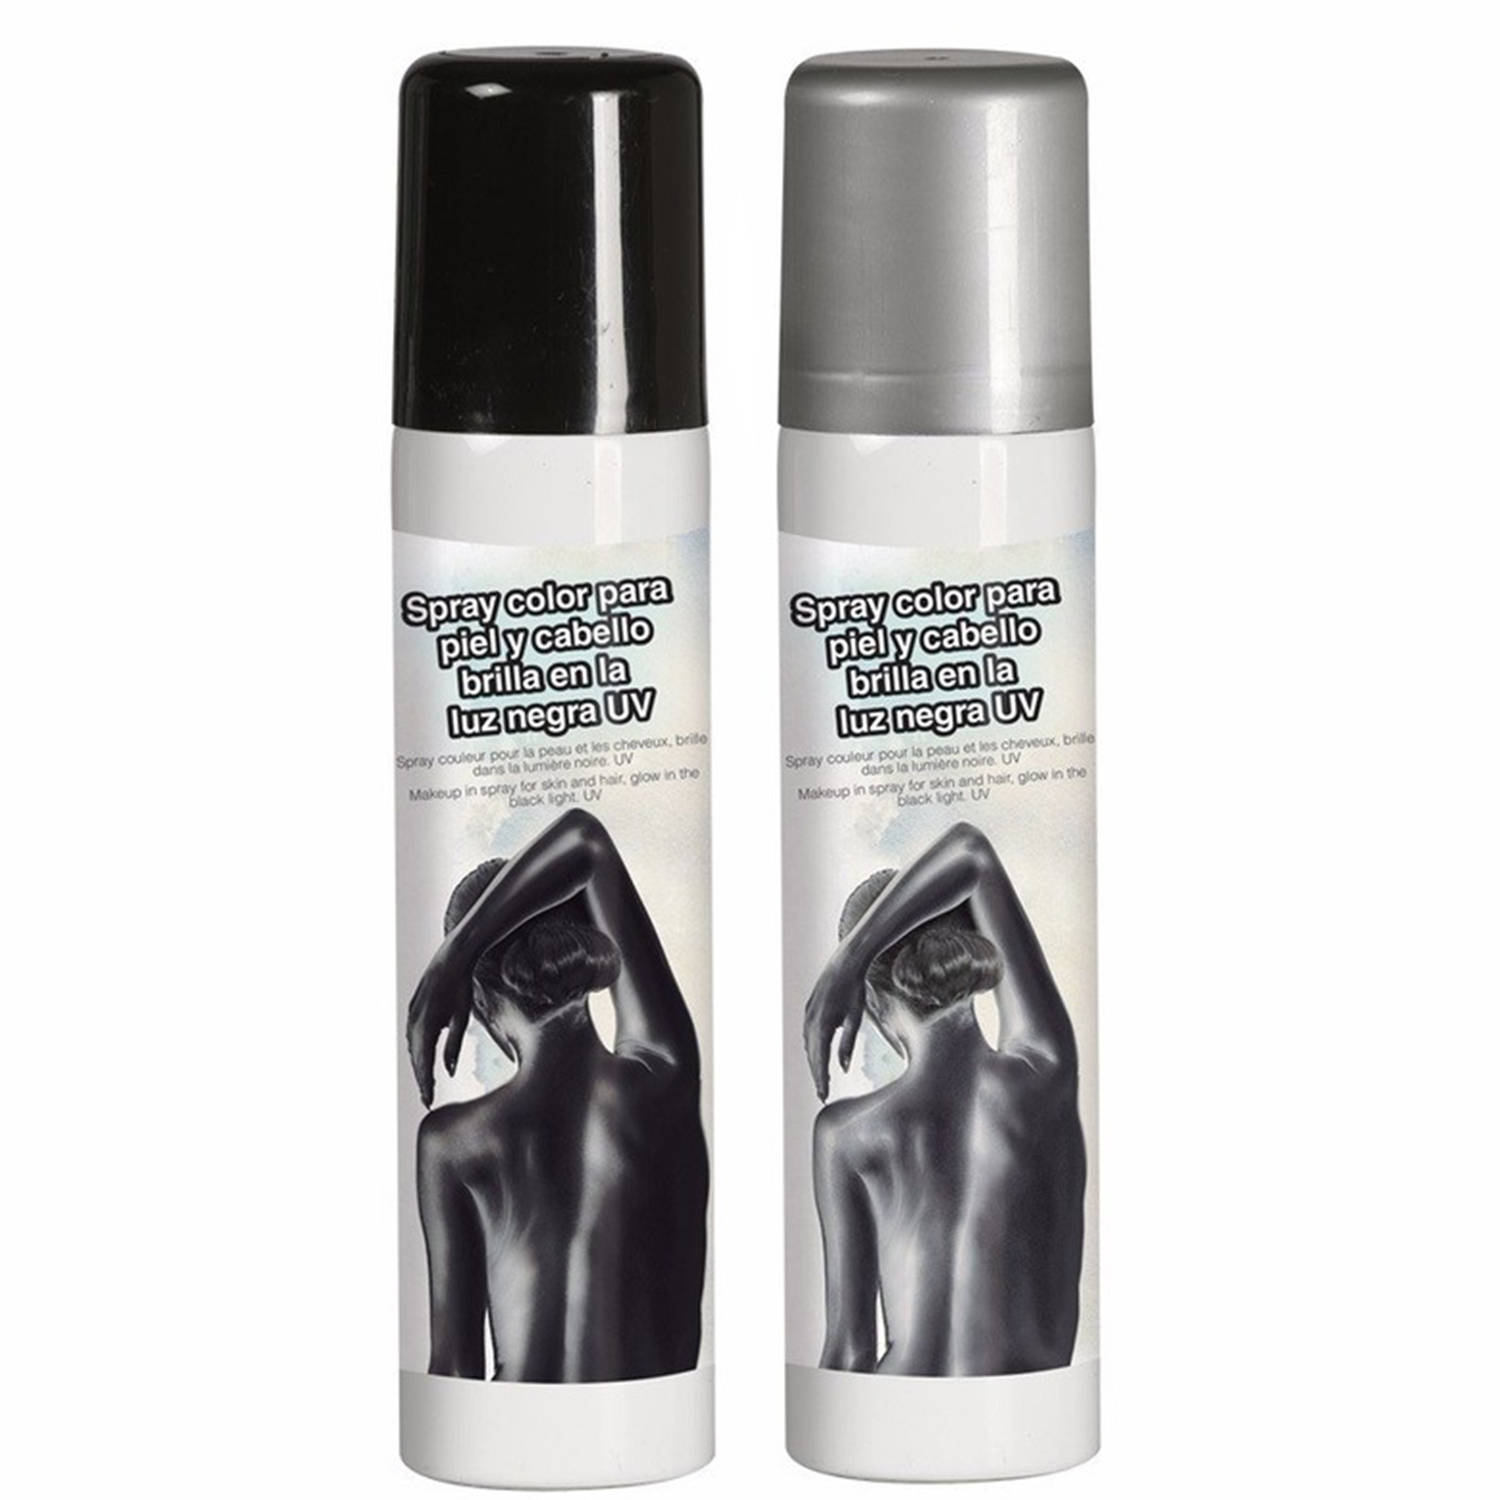 Guirca Haarspray-bodypaint spray 2x kleuren zilver en zwart 75 ml Verkleedhaarkleuring